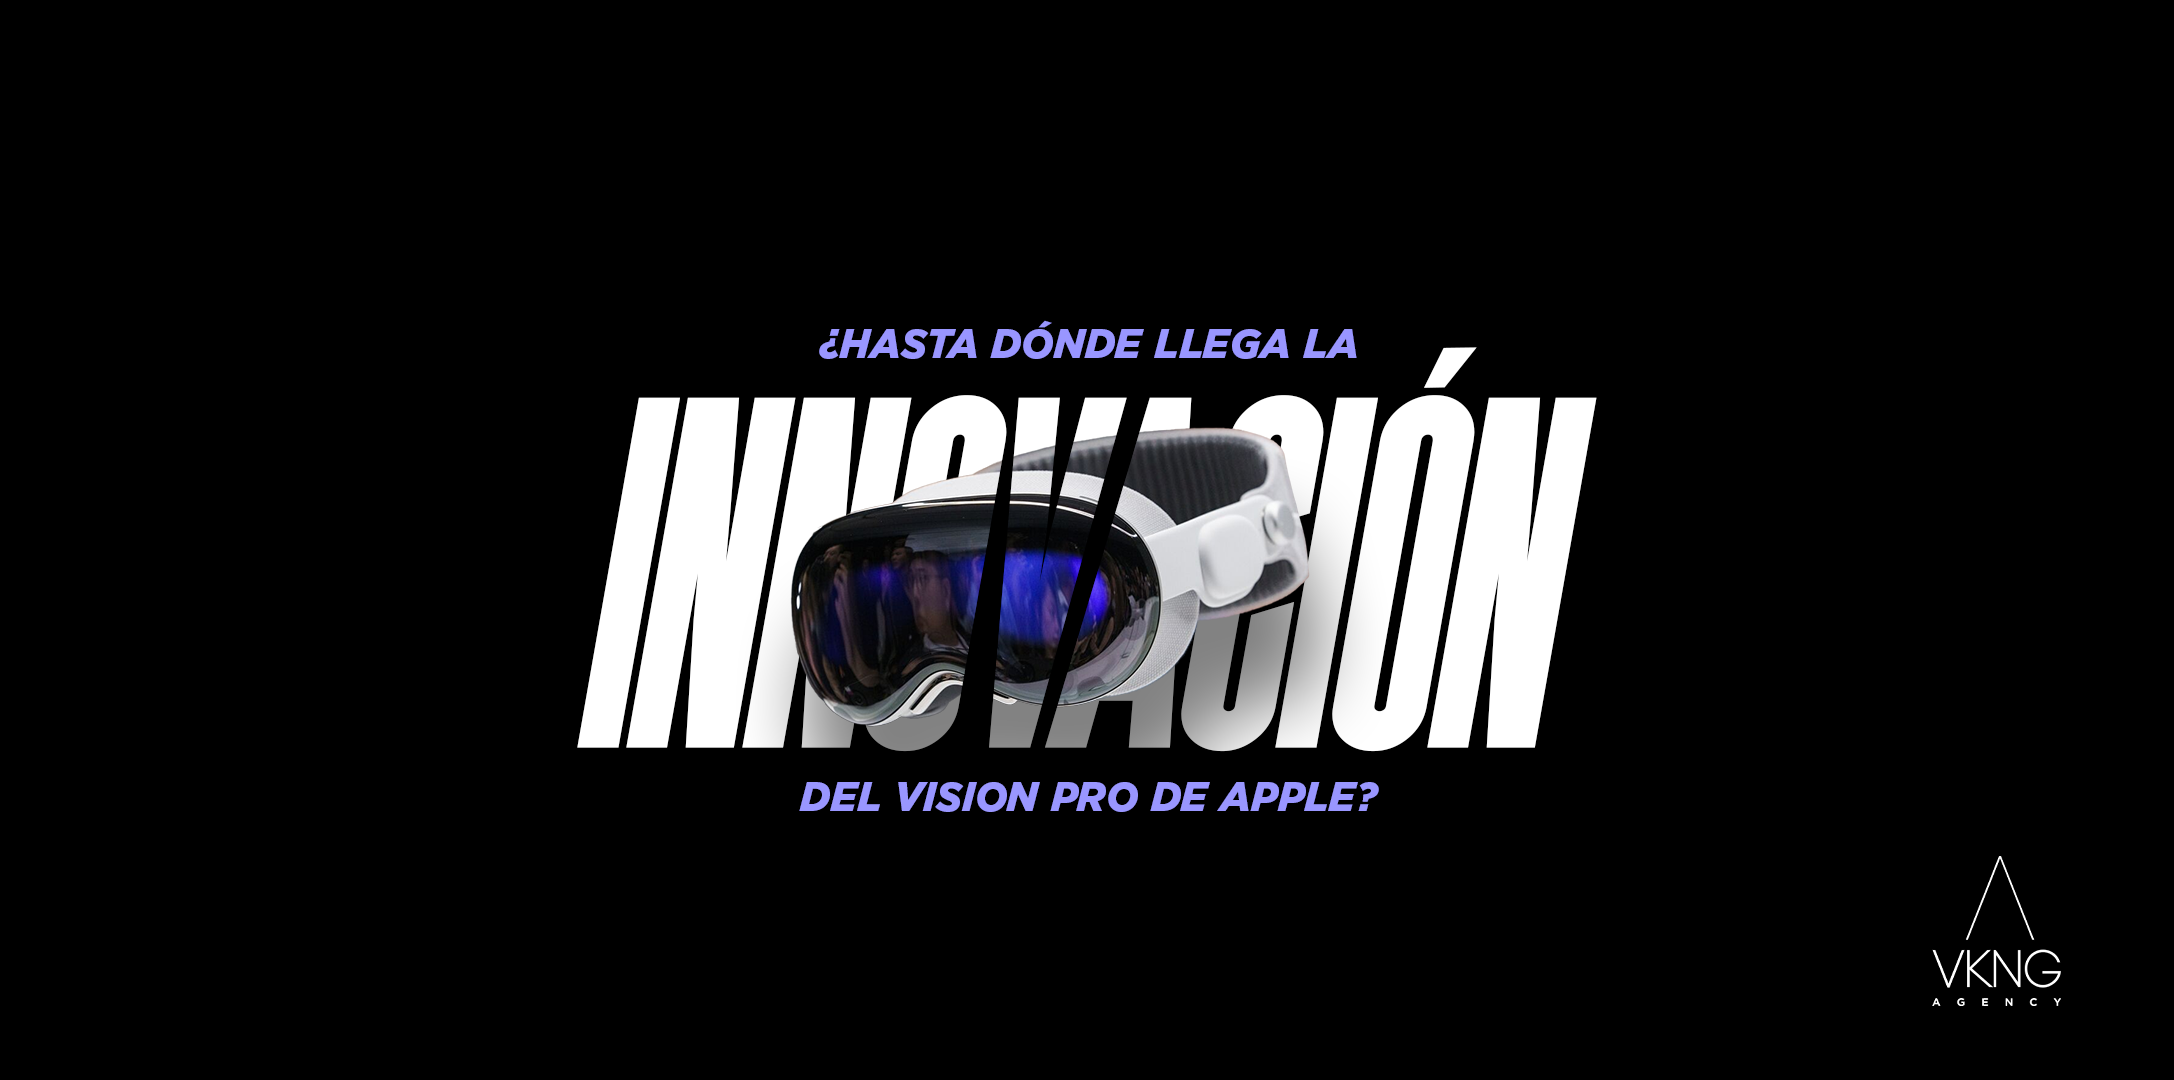 Preview blog: 🥽 ¿Hasta dónde llega la innovación del Vision Pro de Apple? 🥽